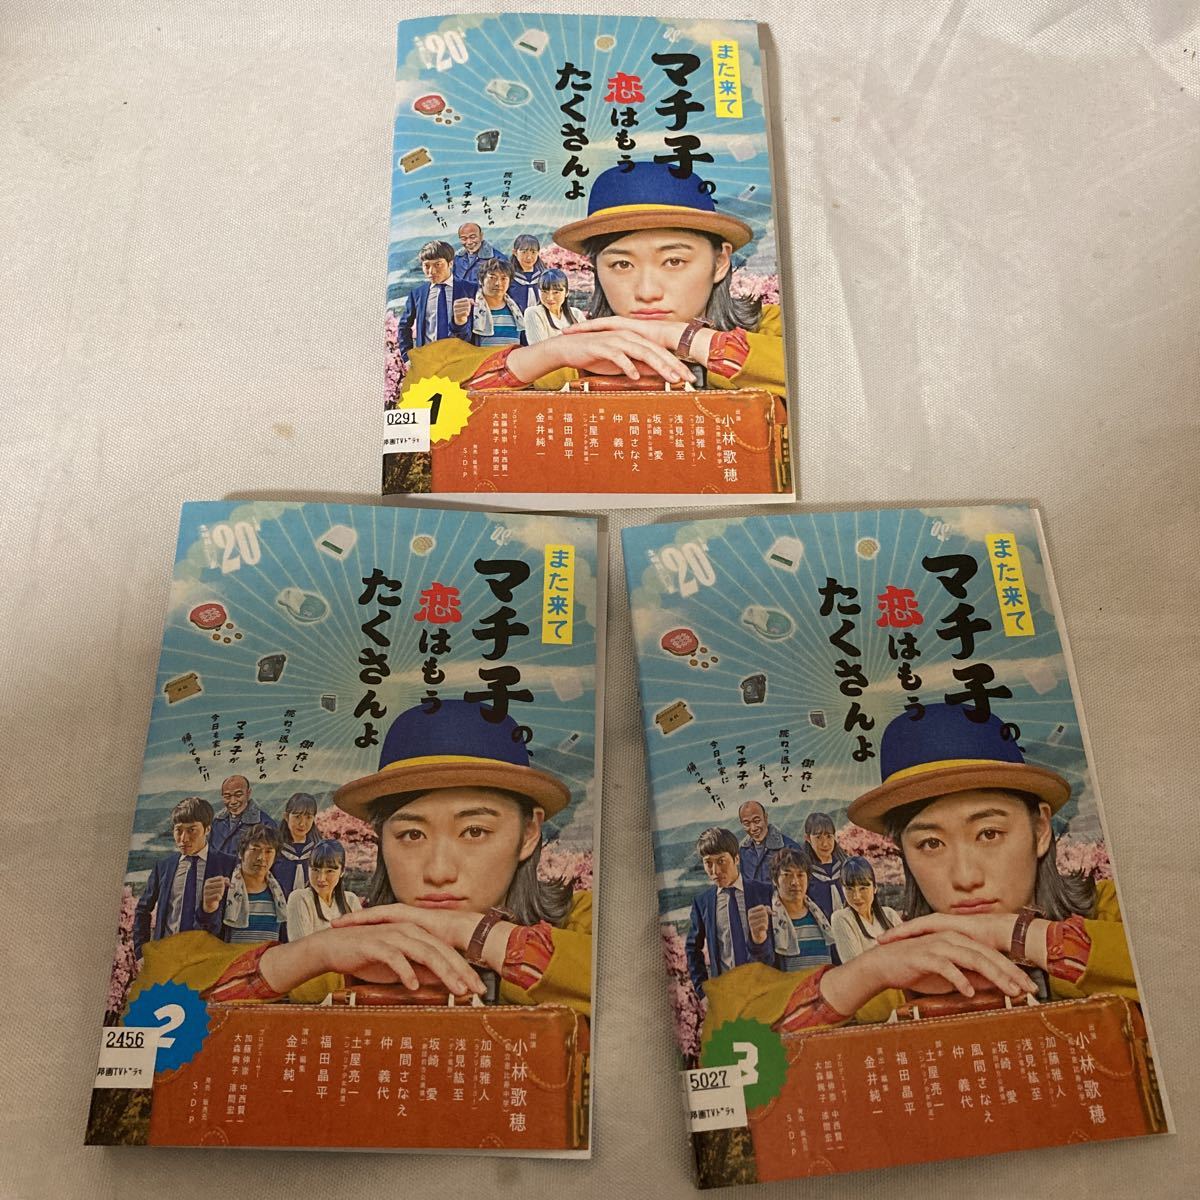 レンタル版 DVD また来てマチ子の、恋はもうたくさんよ 私立恵比寿中学 小林歌穂 全3巻セット